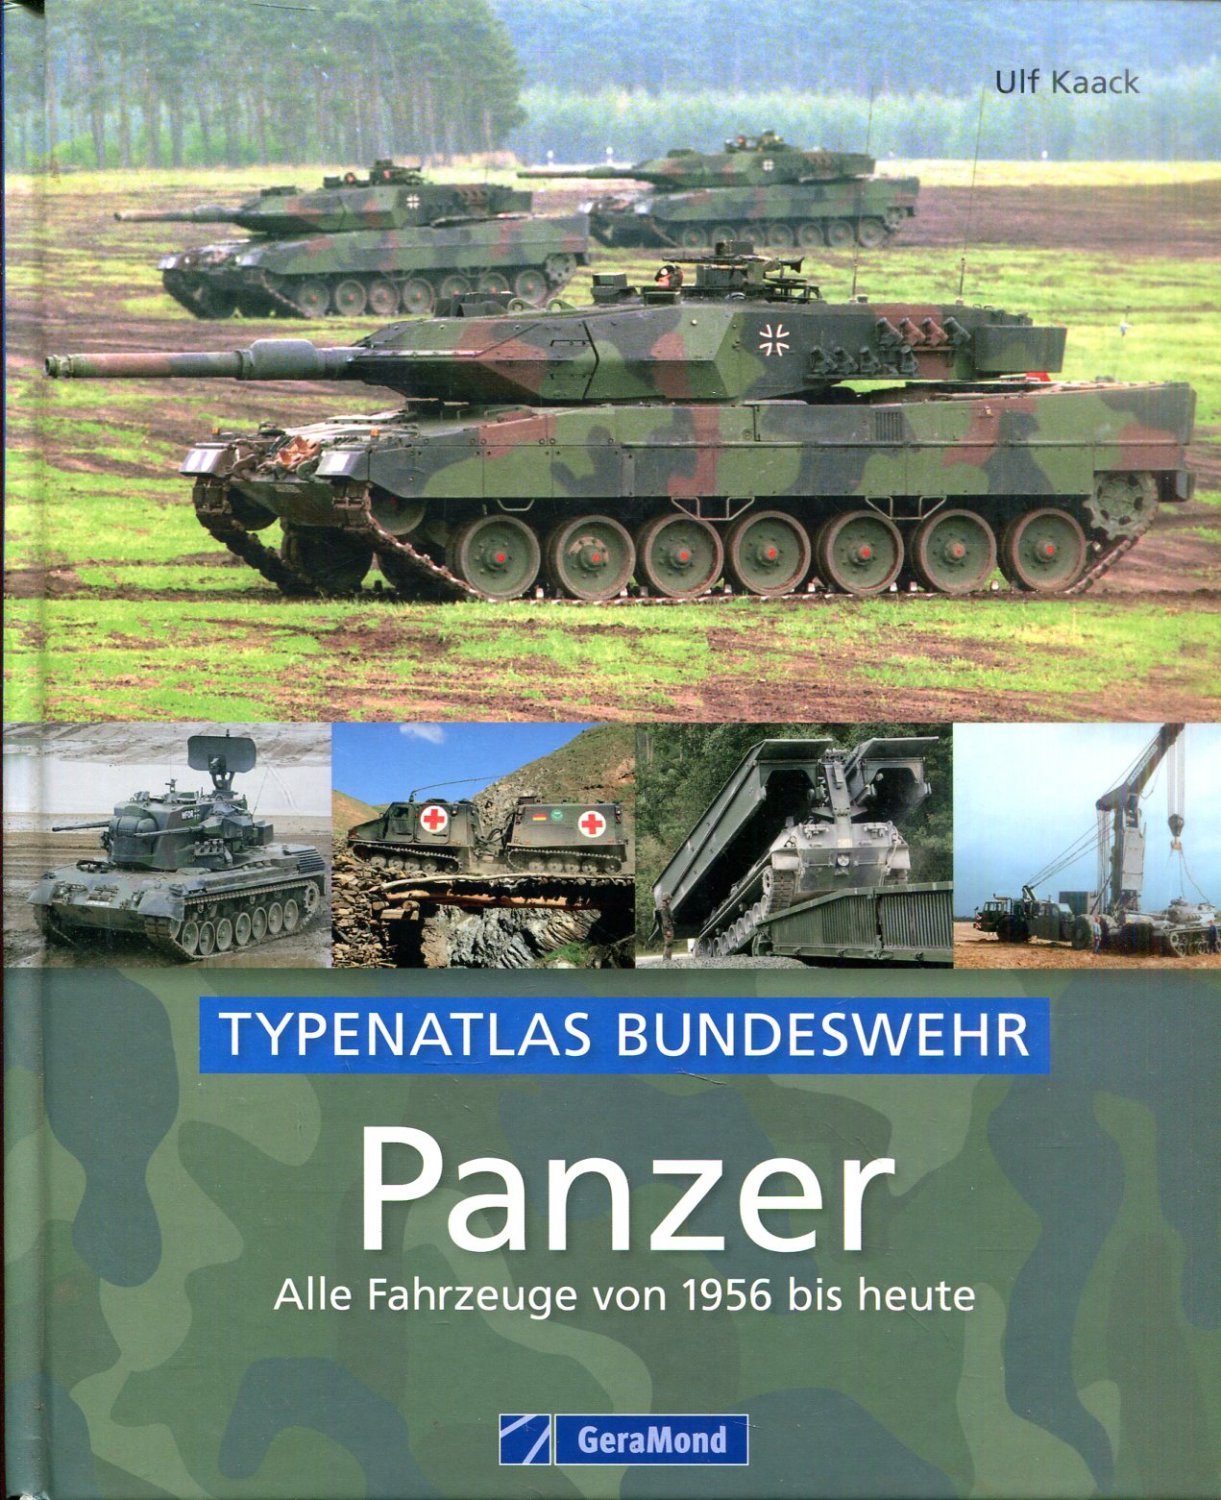 Bundeswehr Panzer Alle Fahrzeuge von 1956 bis heute von Ulf Kaack 9783862455744 